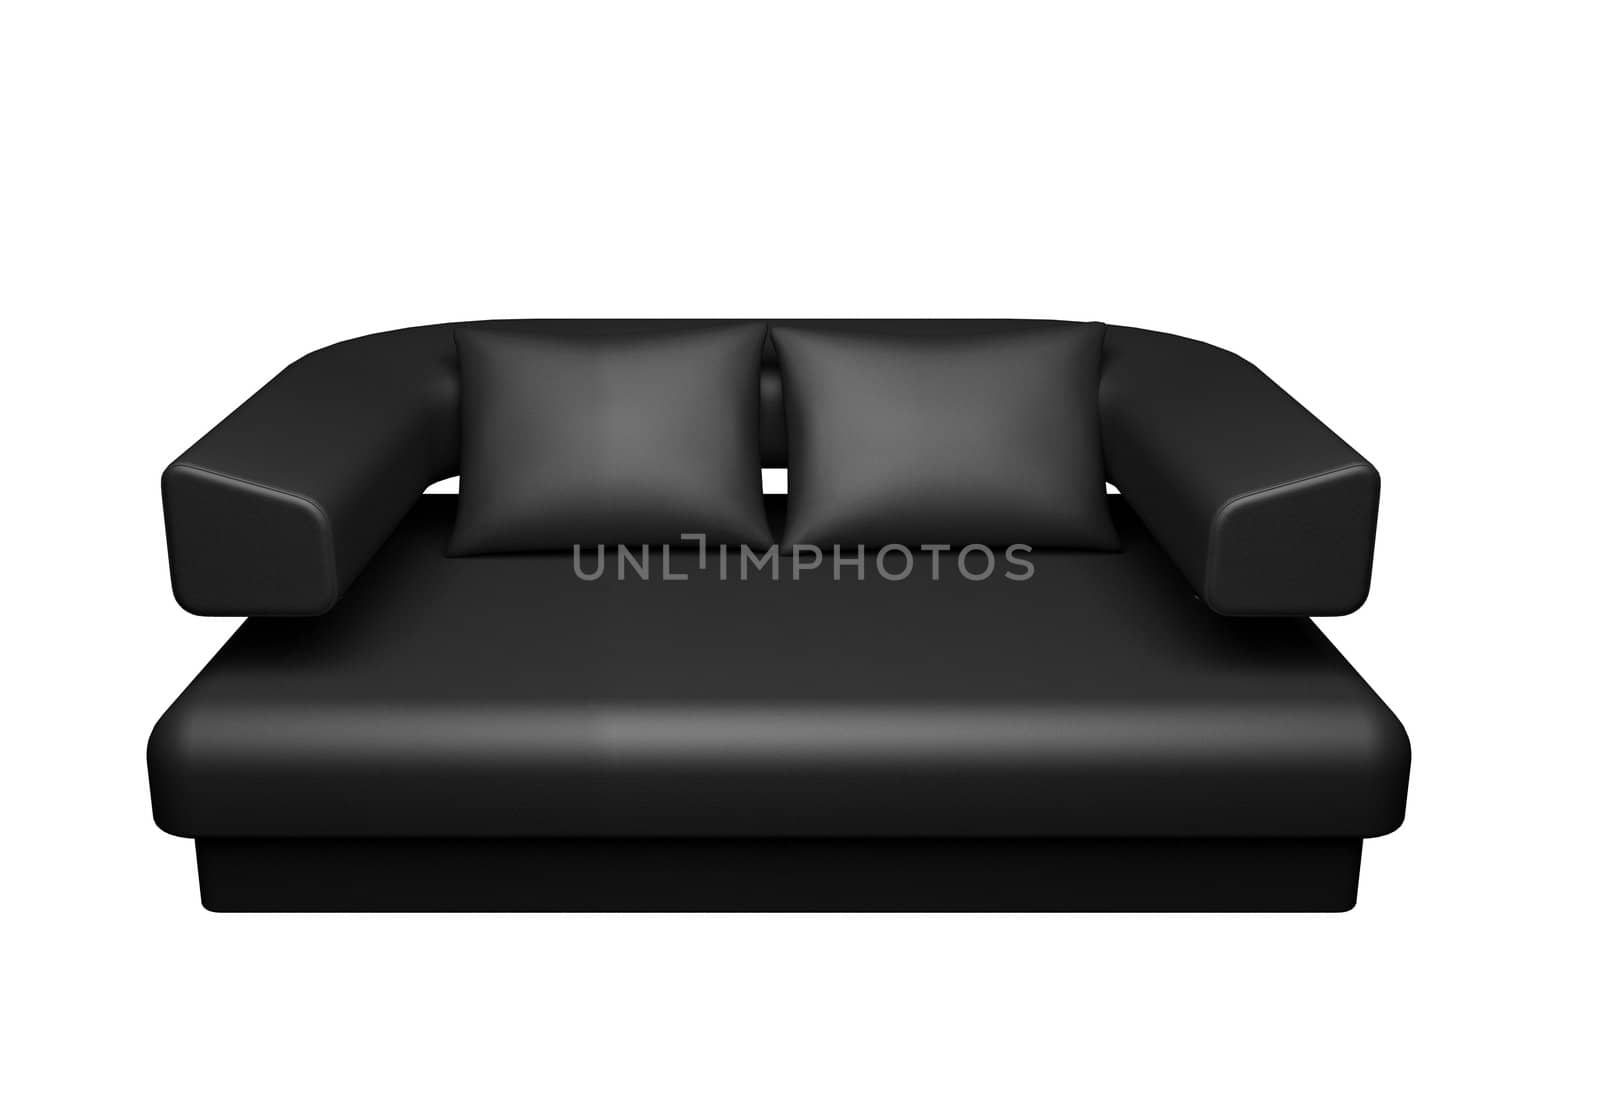 black sofa isolated on white background